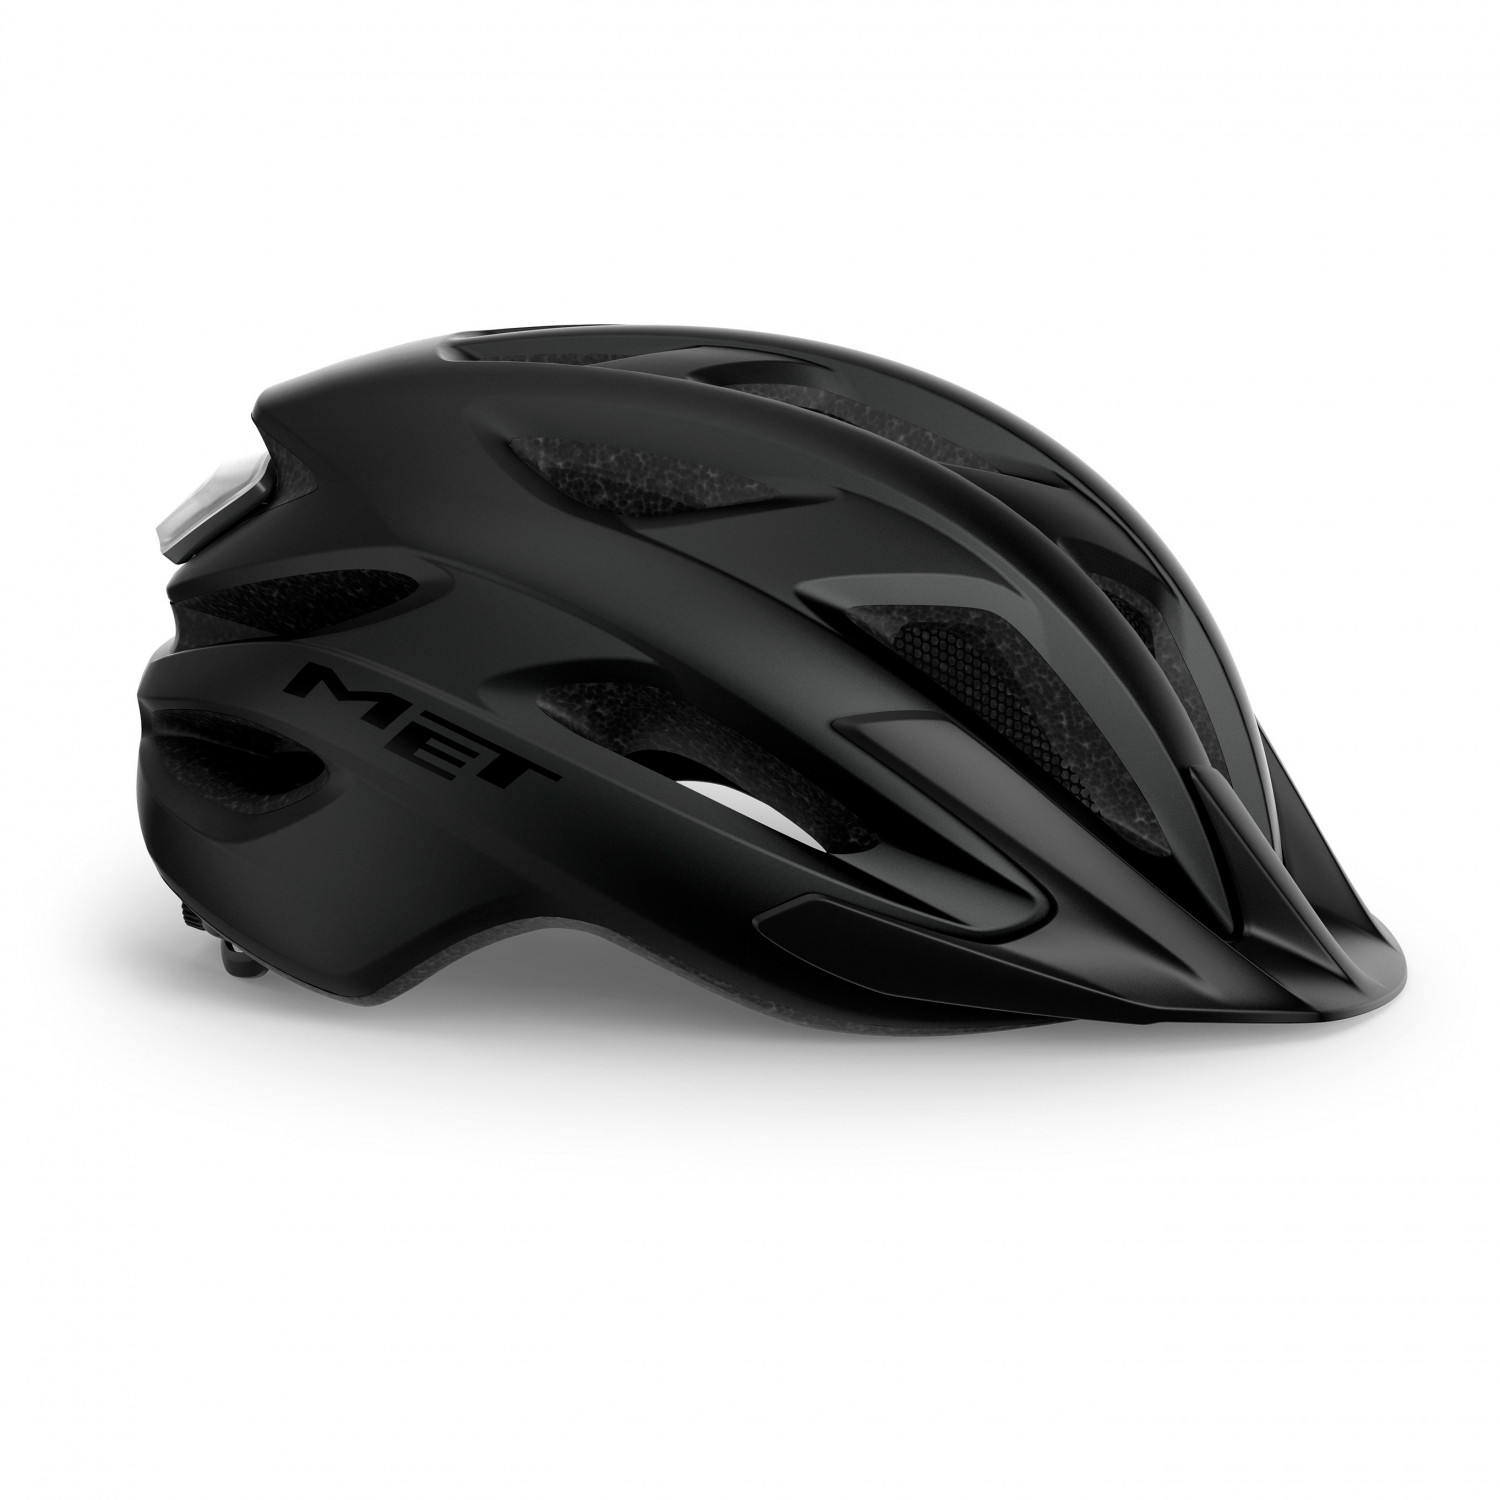 Велосипедный шлем Met Crossover, цвет Matt Black